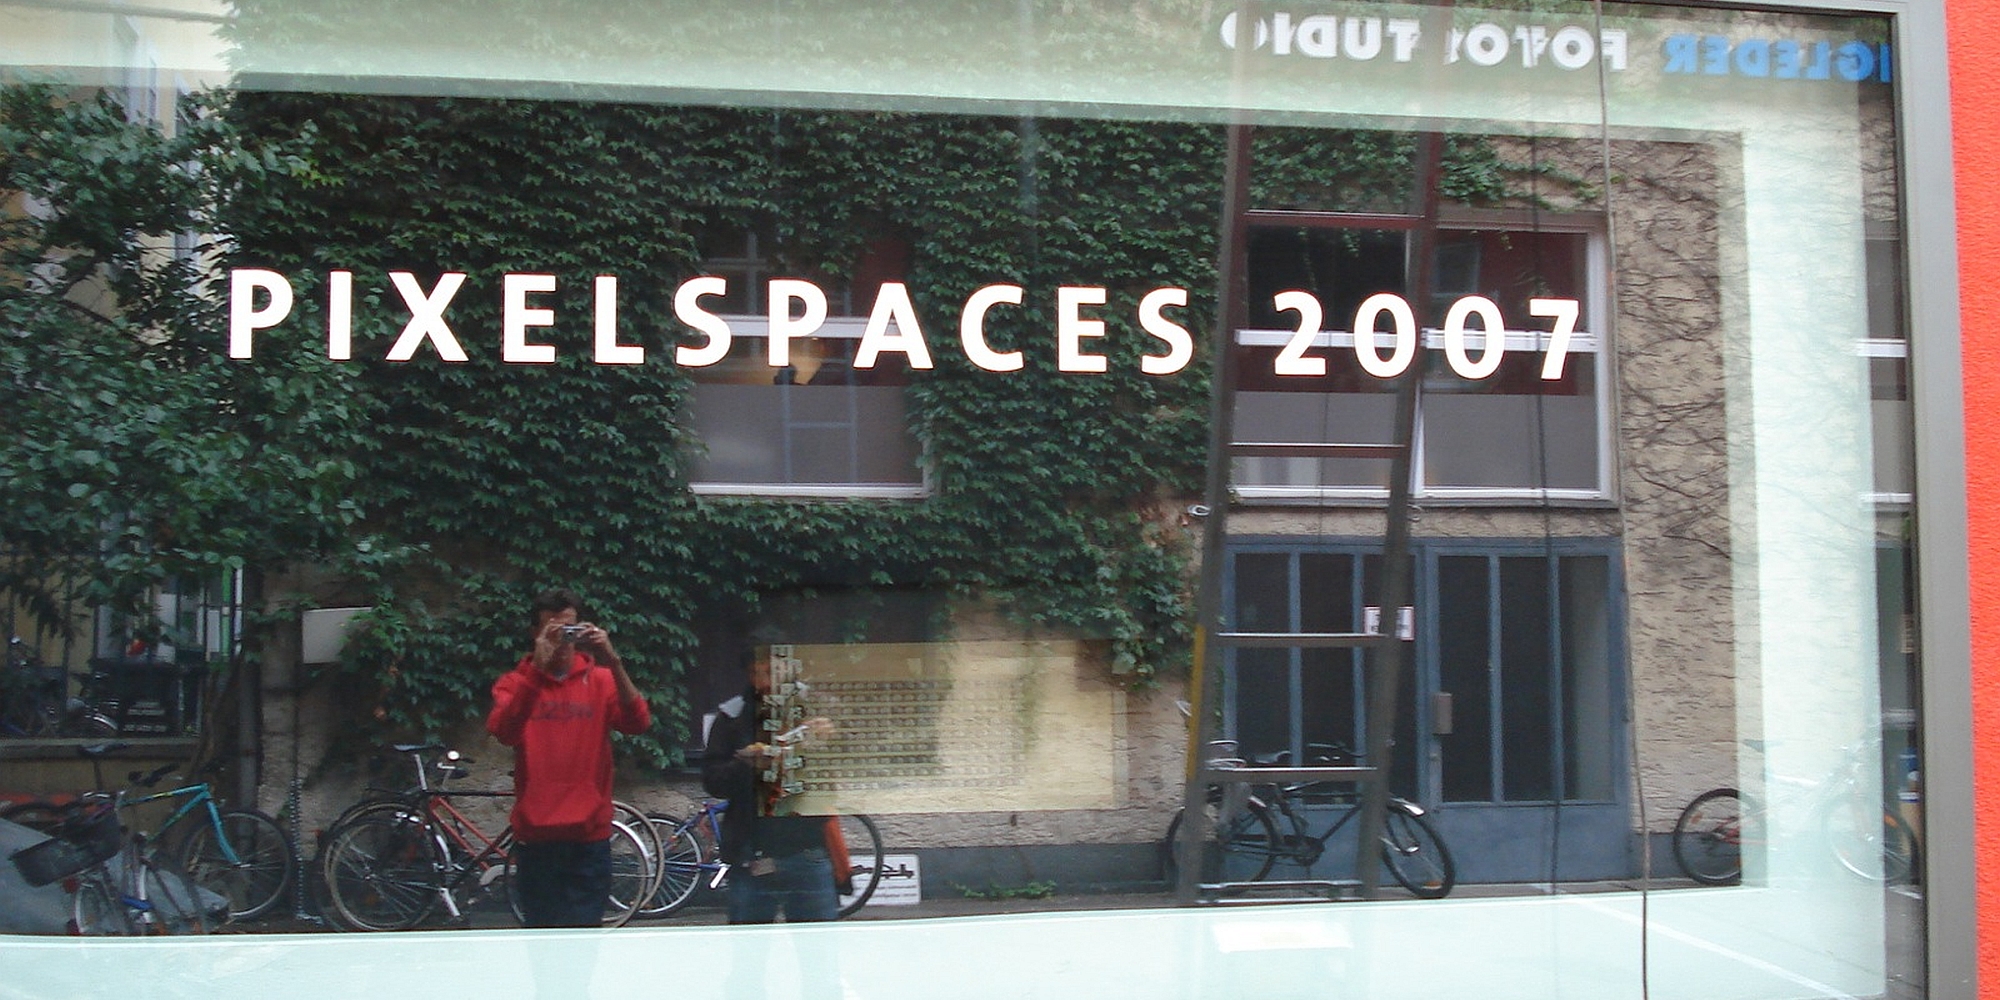 Pixelspaces 2007 – Onfield Im Jahr 2007 diskutierte Pixelspaces die Funktionen virtueller Gemeinschaften und mögliche Wege, diese in die physische Realität zu übertragen.